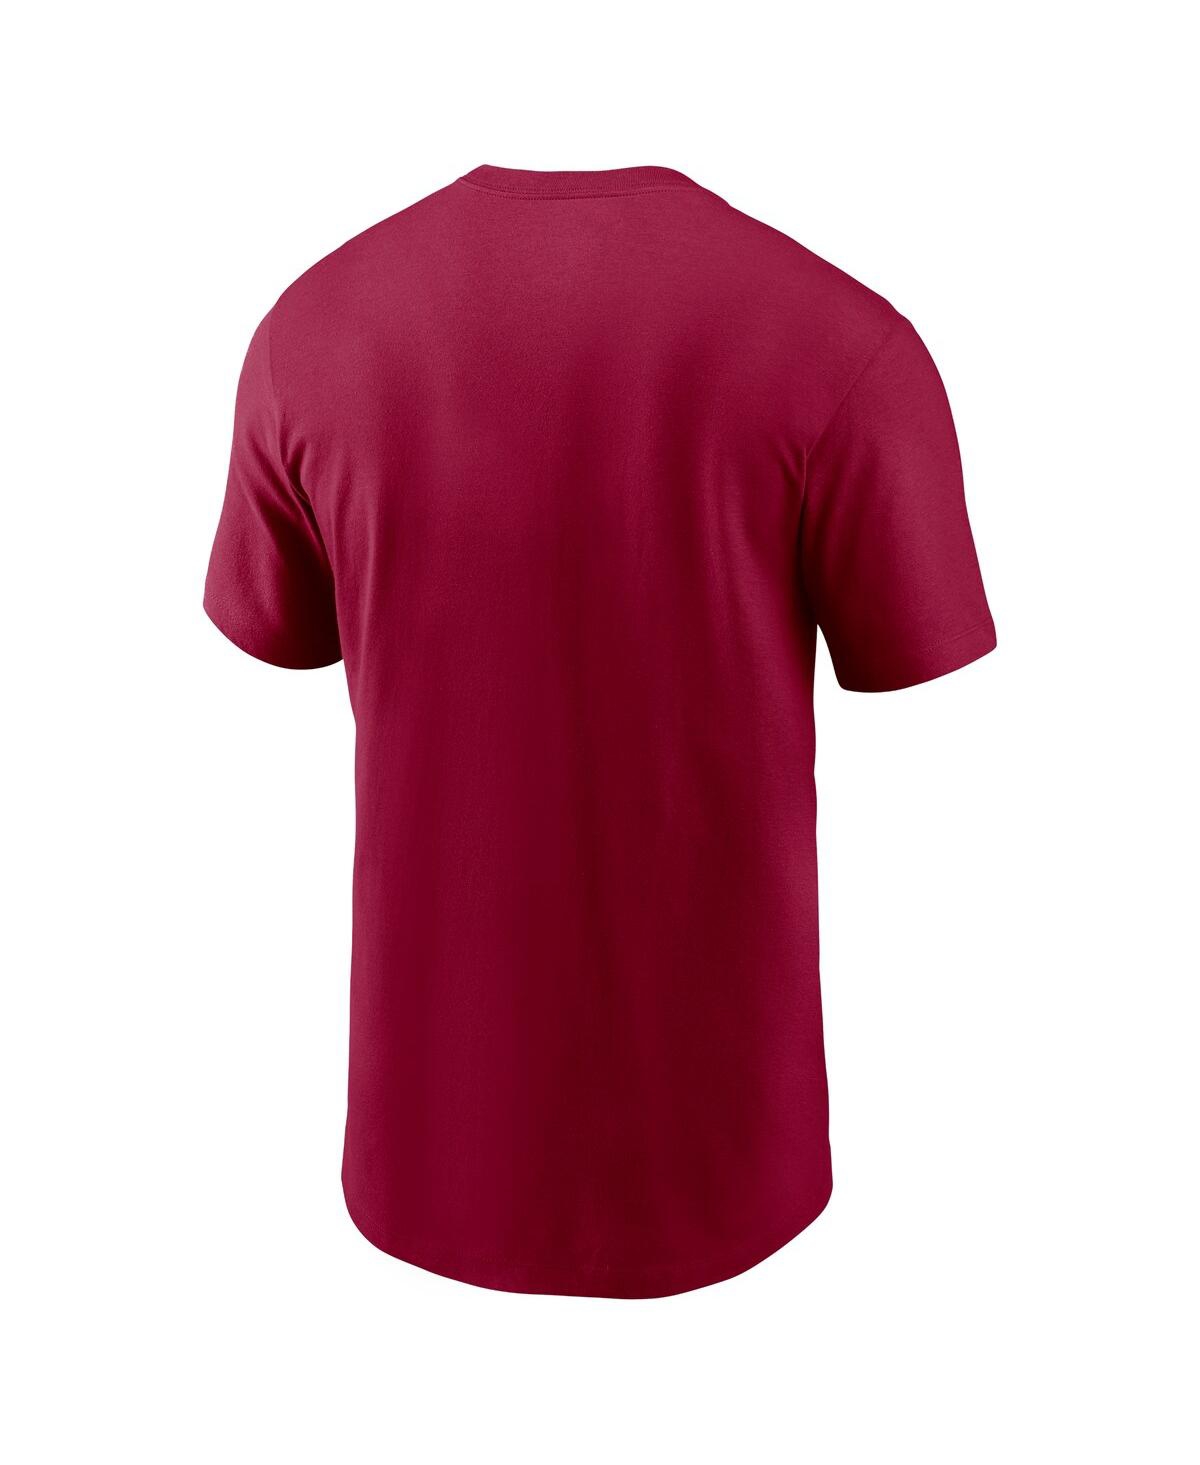 Shop Nike Men's  Burgundy Washington Commanders Muscle T-shirt